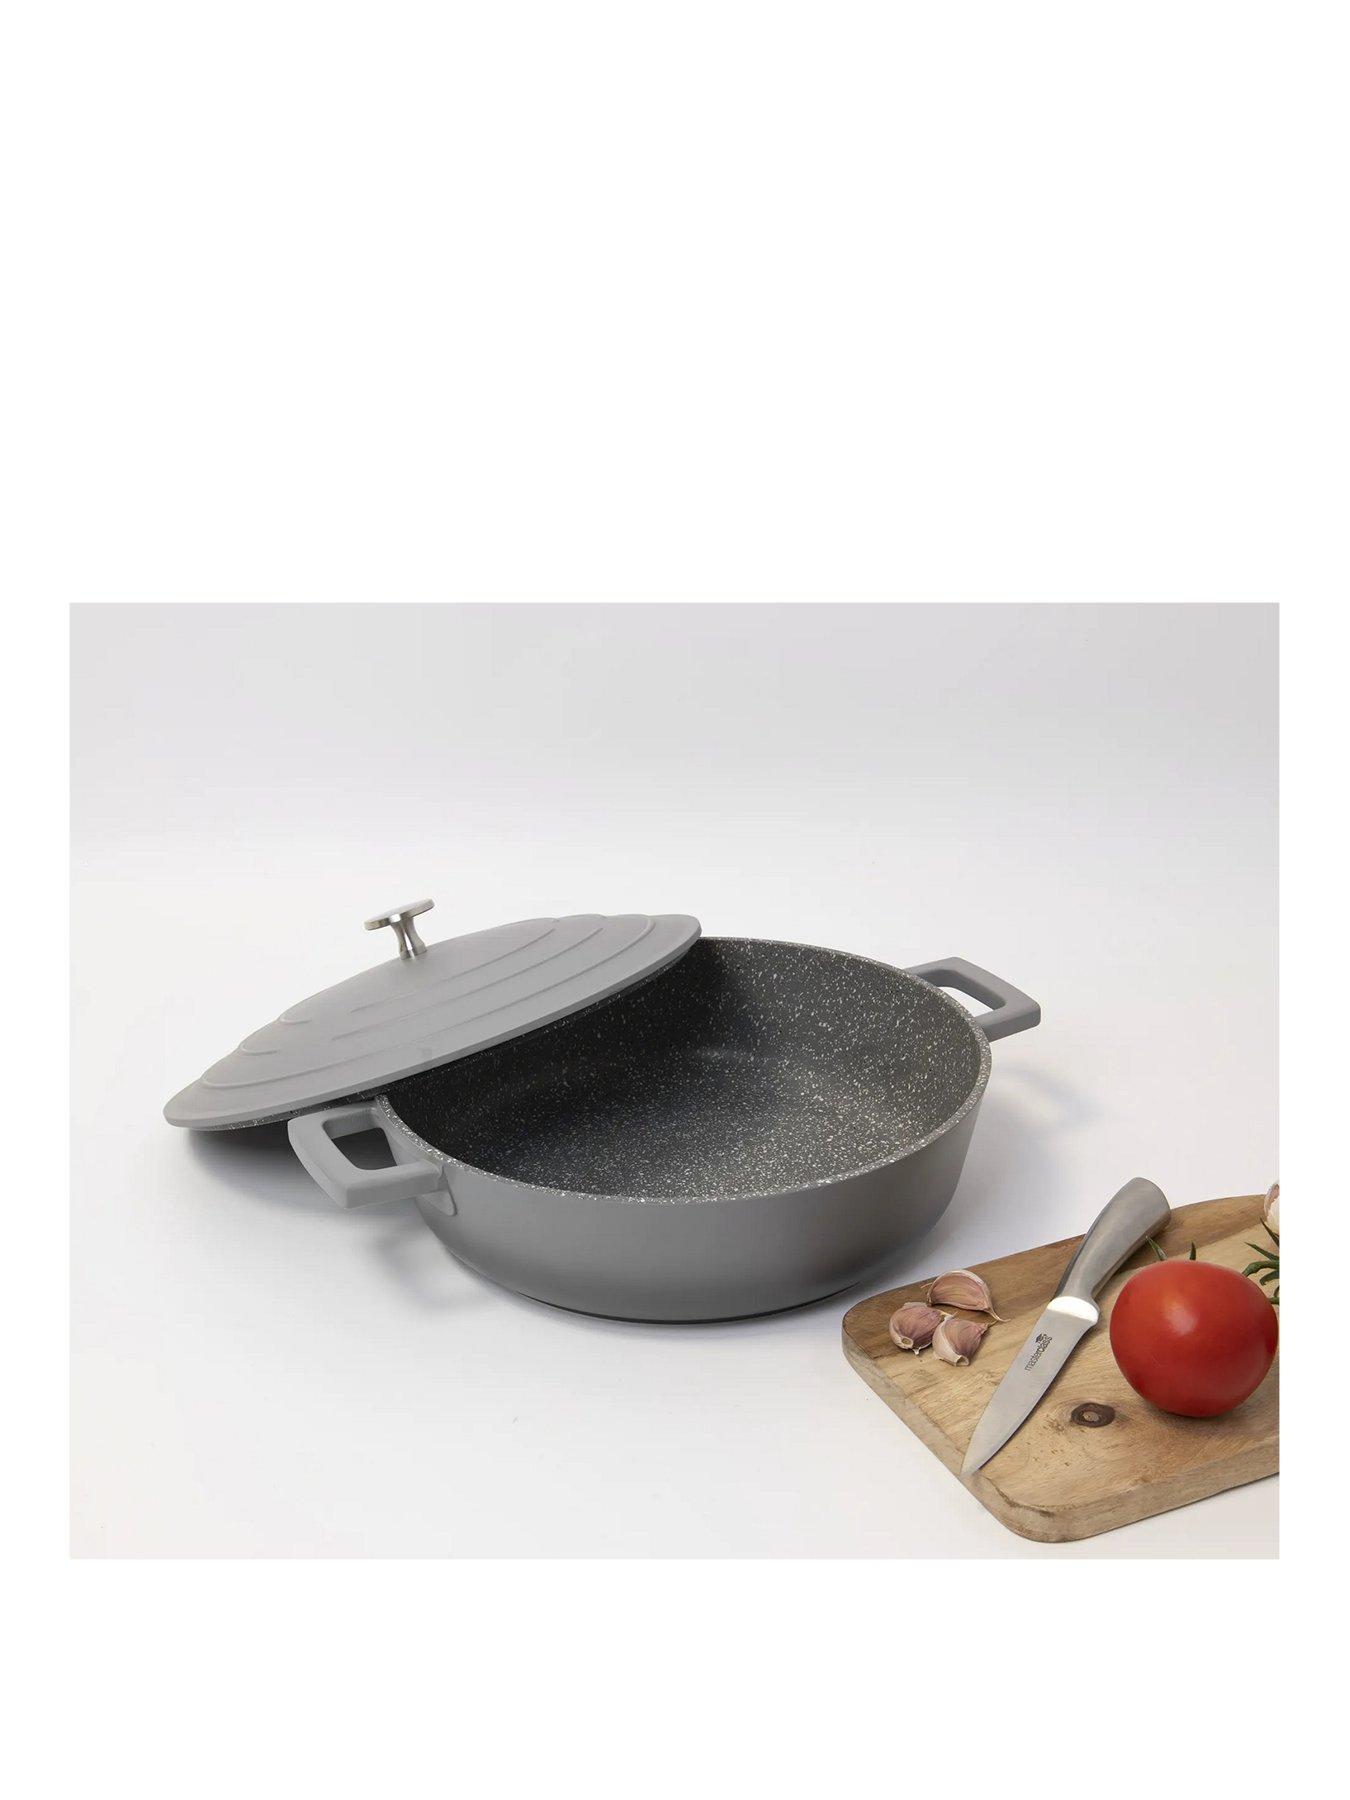 Masterclass, Pots & pans, Cookware, Home & garden